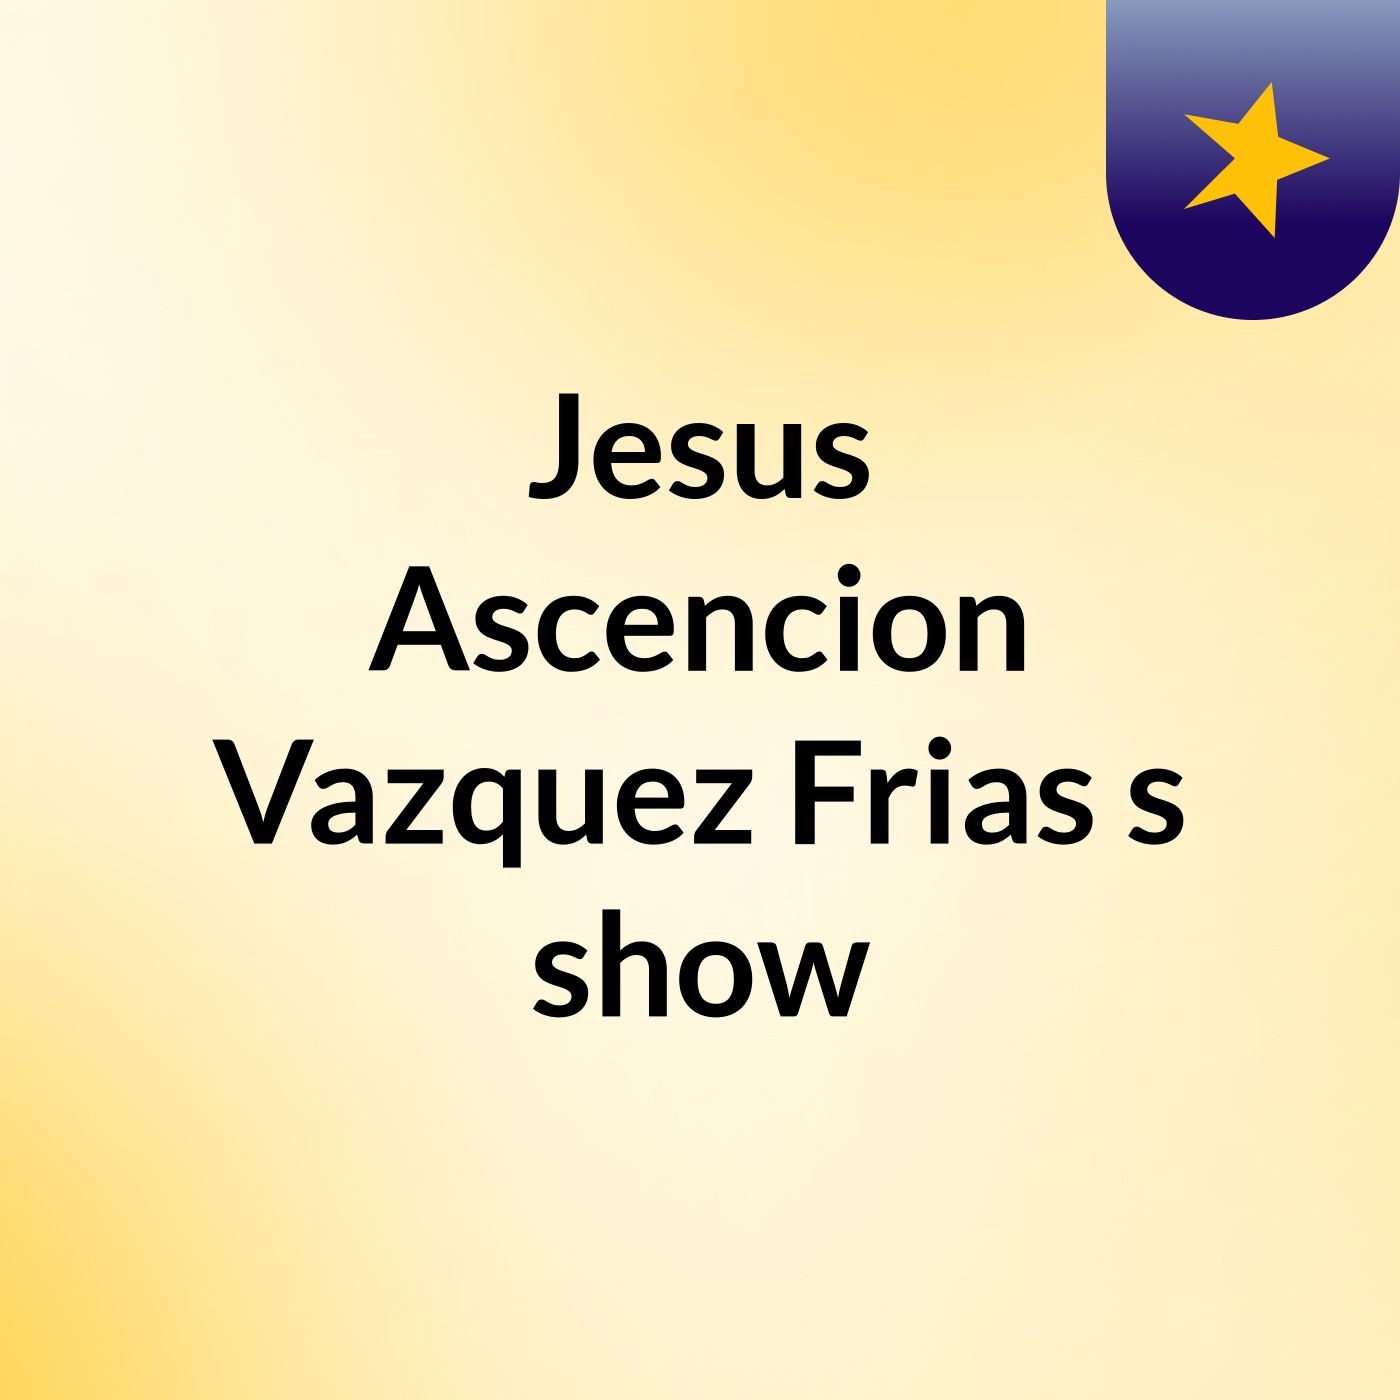 Jesus Ascencion Vazquez Frias's show